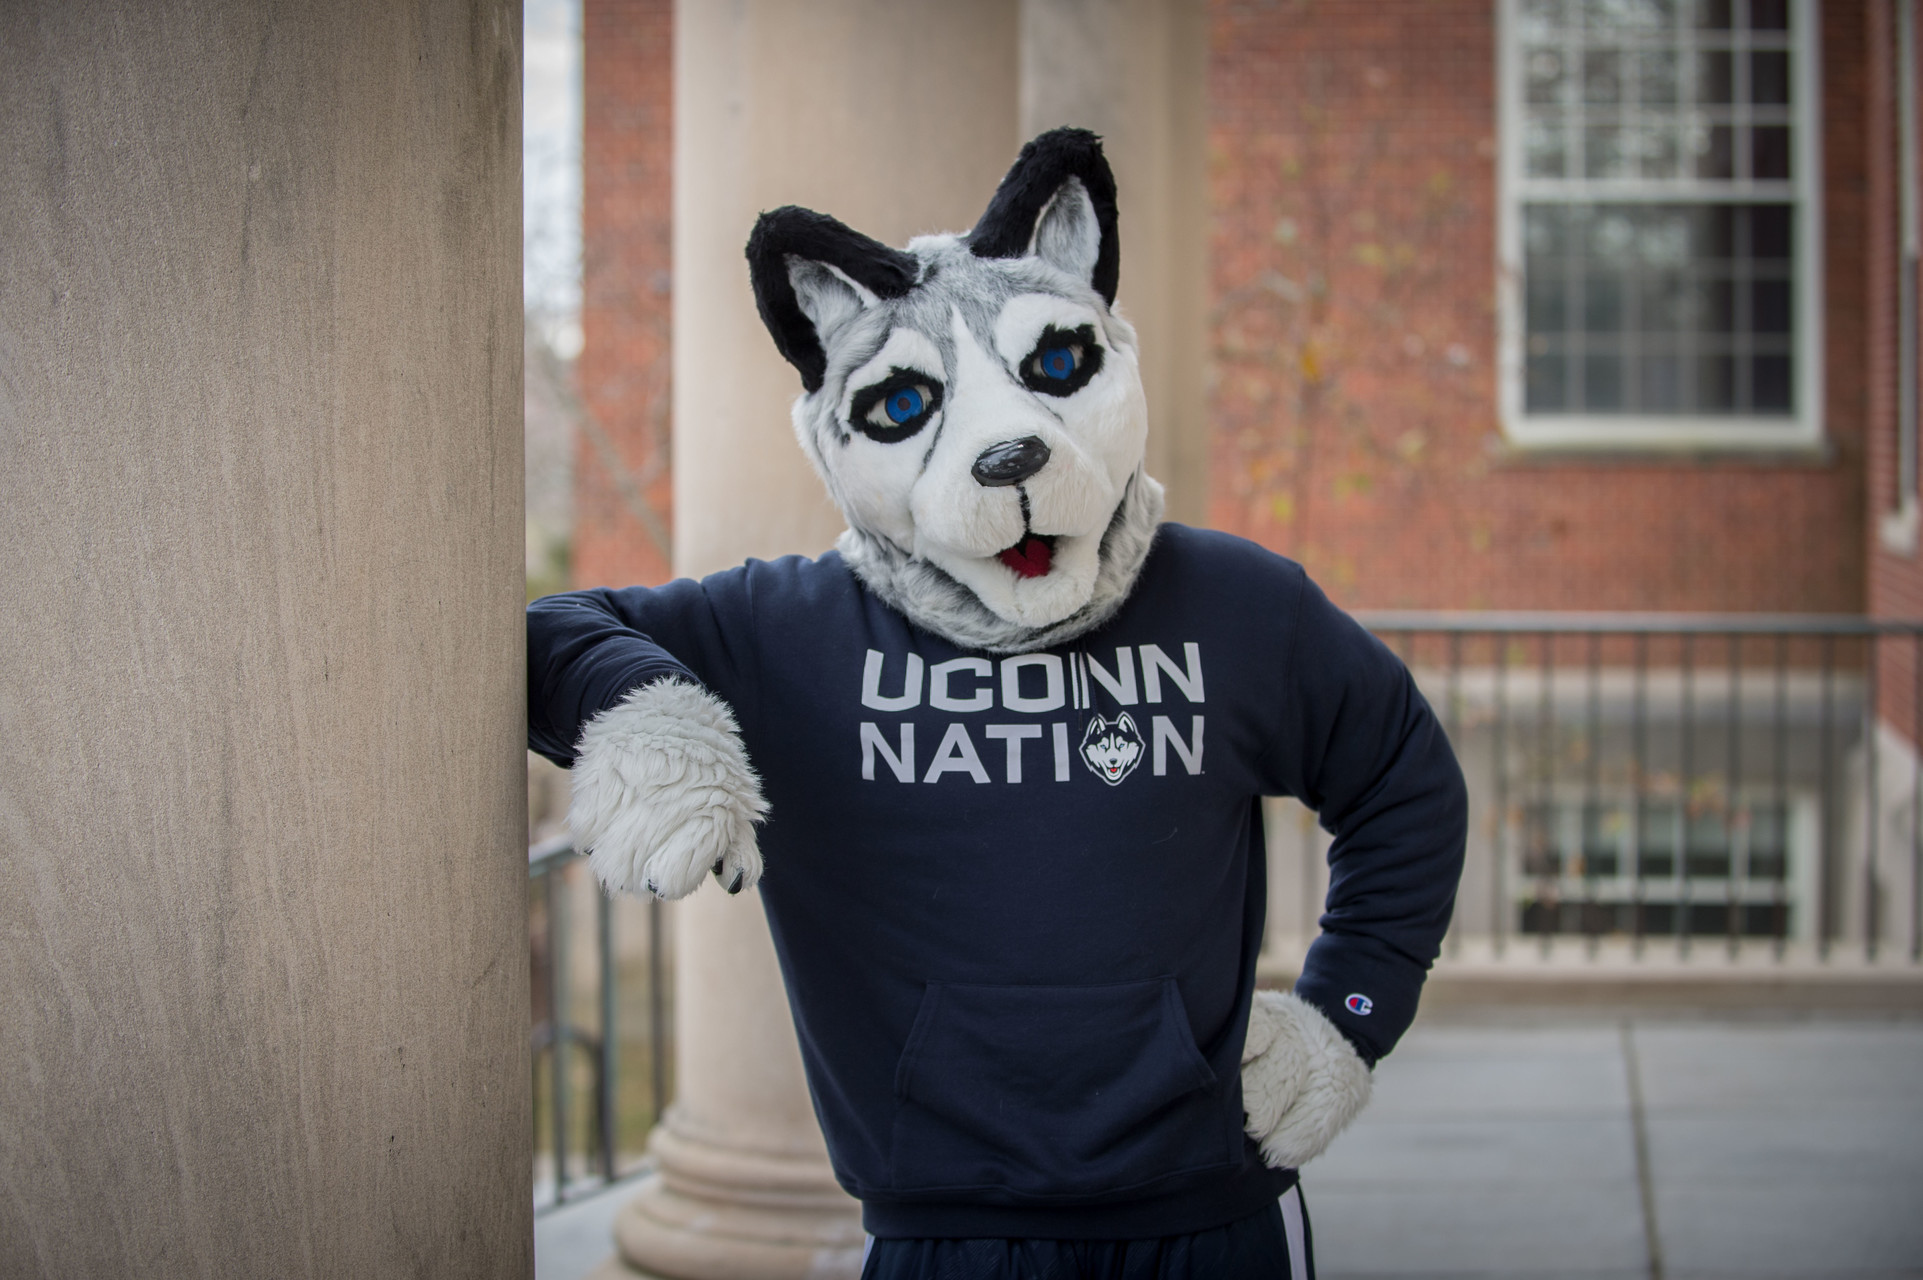 Jonathan Husky Mascot in navy blue UConn Nation Shirt